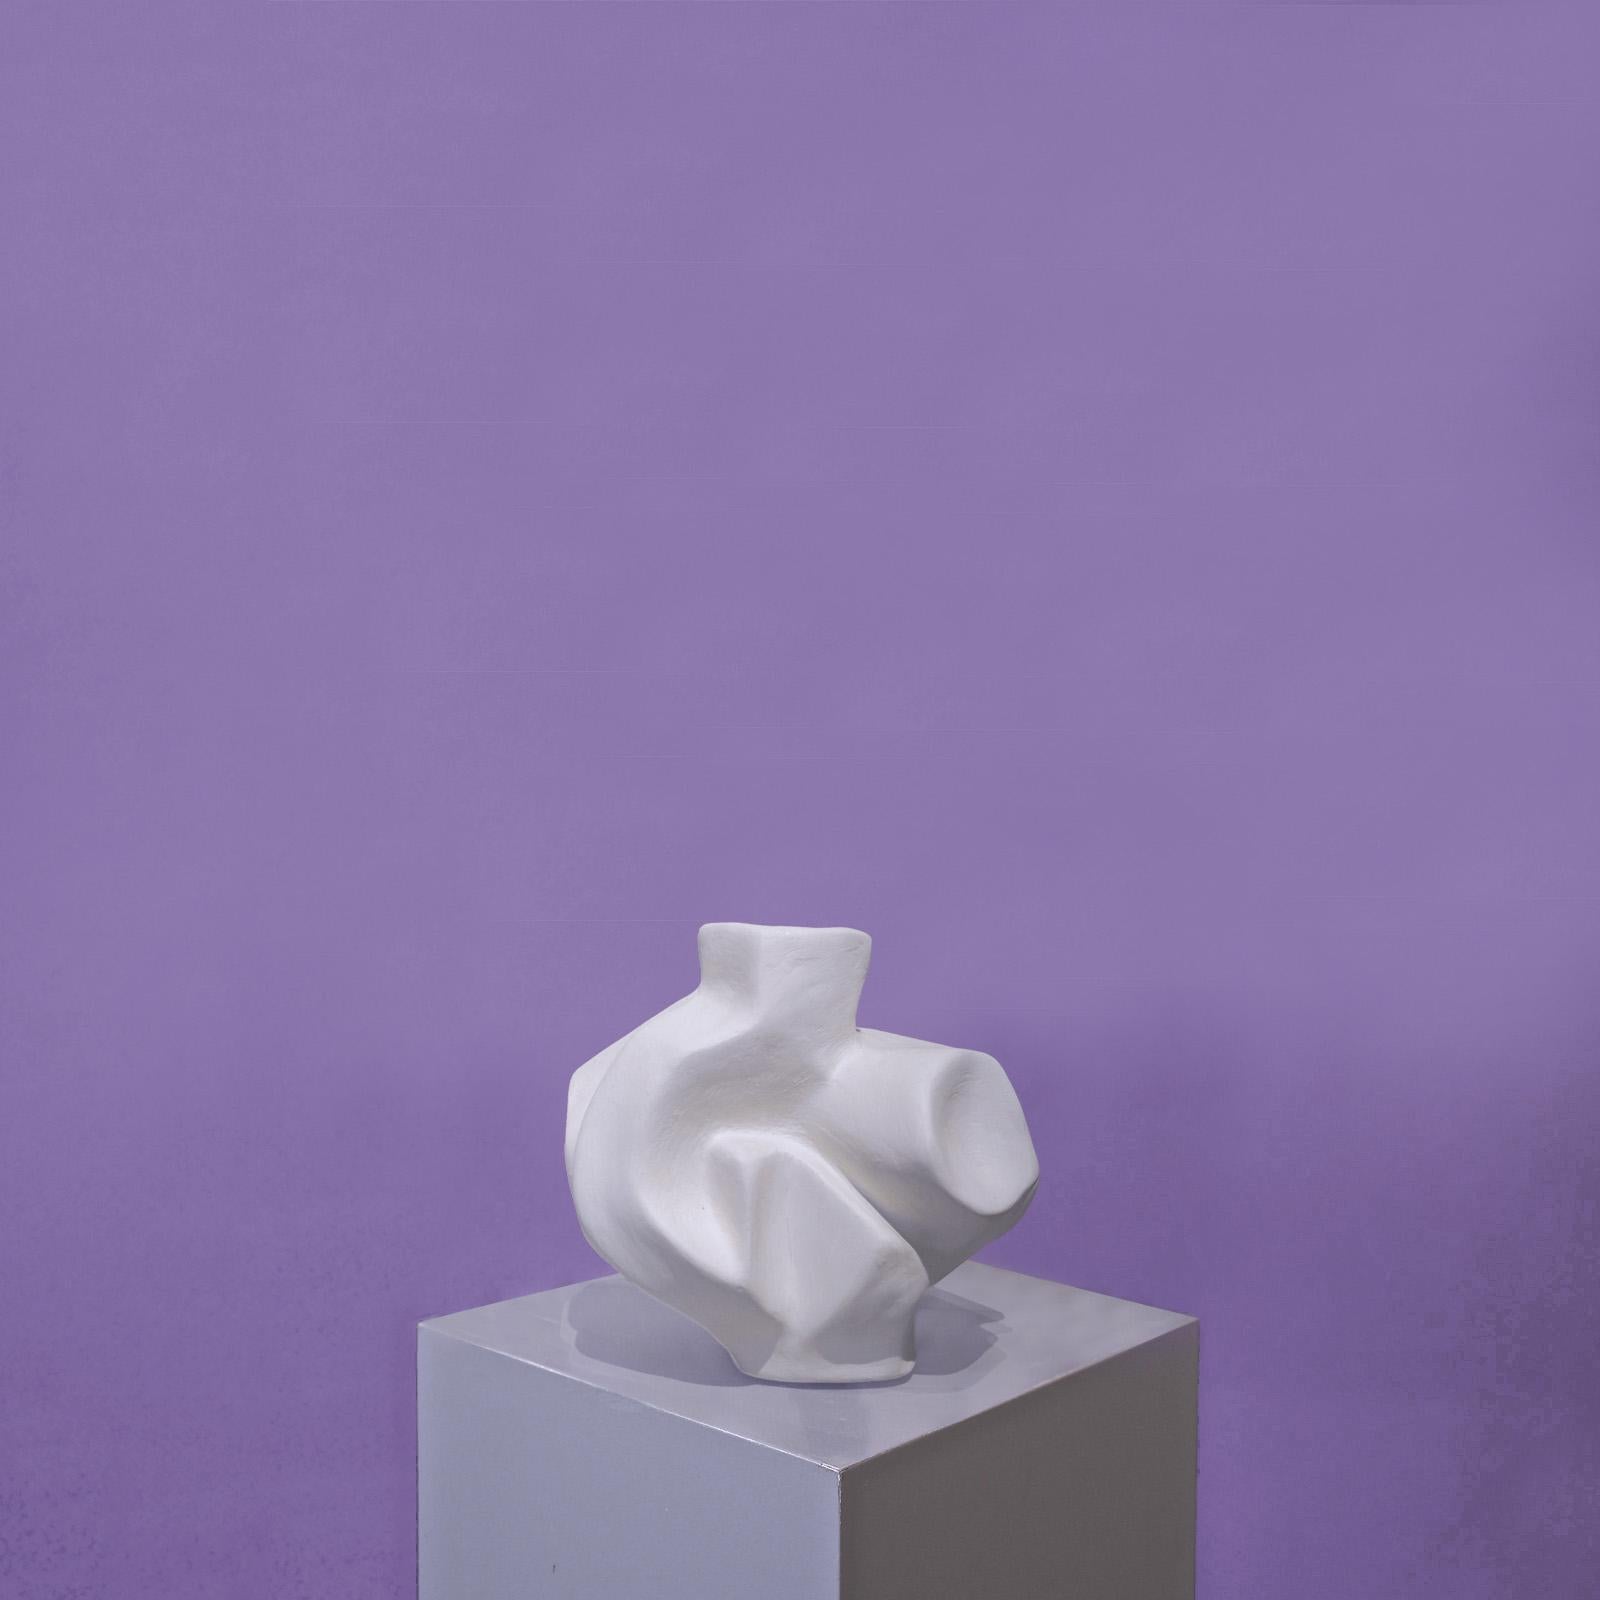 La série Jordan Artisan -New Moves
Ses œuvres sont souvent créées à partir de matériaux de construction de base tels que des barres d'armature, du polystyrène expansé, etc.
et de la colle à carrelage. Le choix de la barre d'armature comme matériau